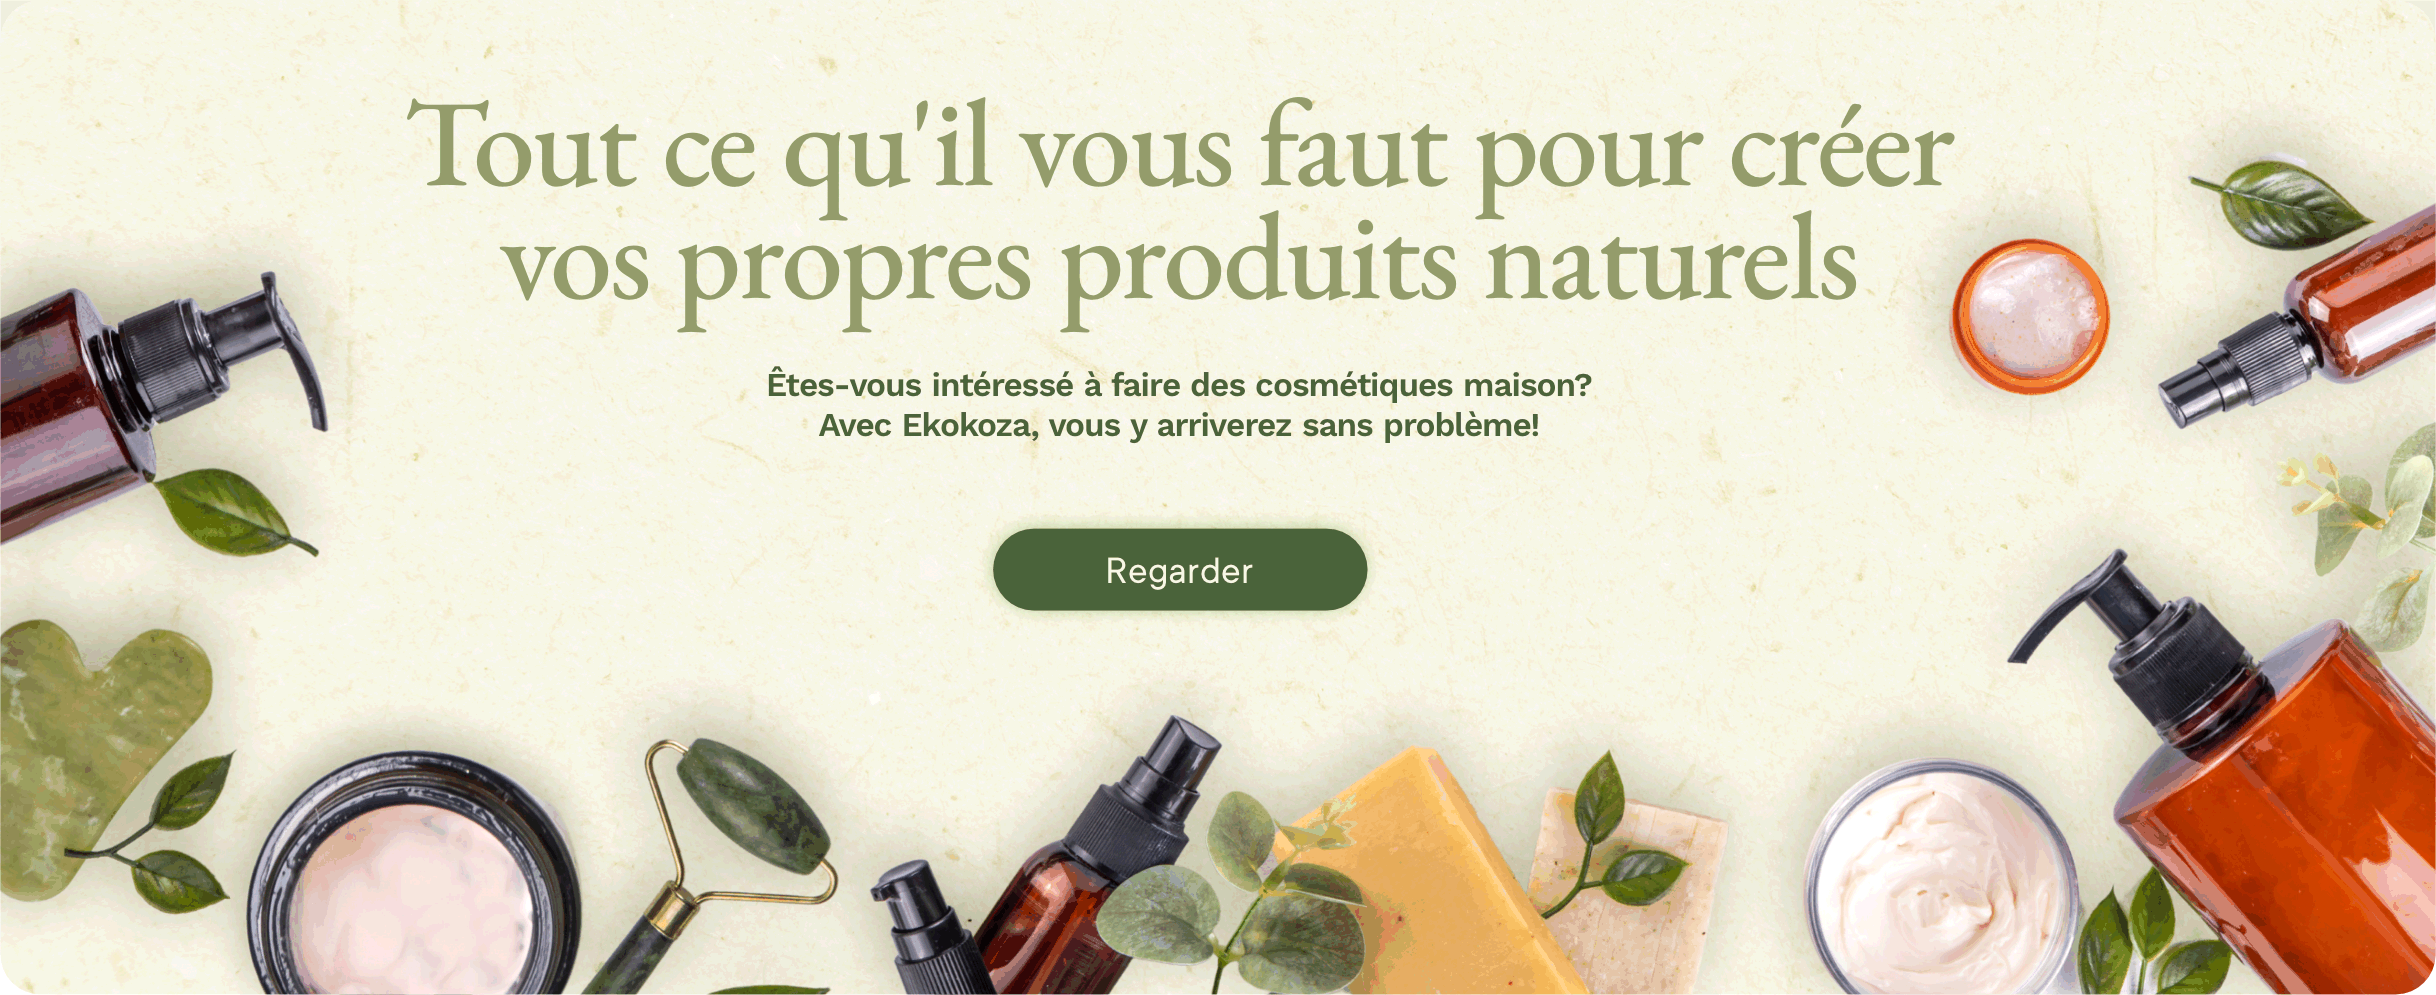 Banner - Tout ce qu'il vous faut pour créer vos propres produits naturels: Ekokoza.fr